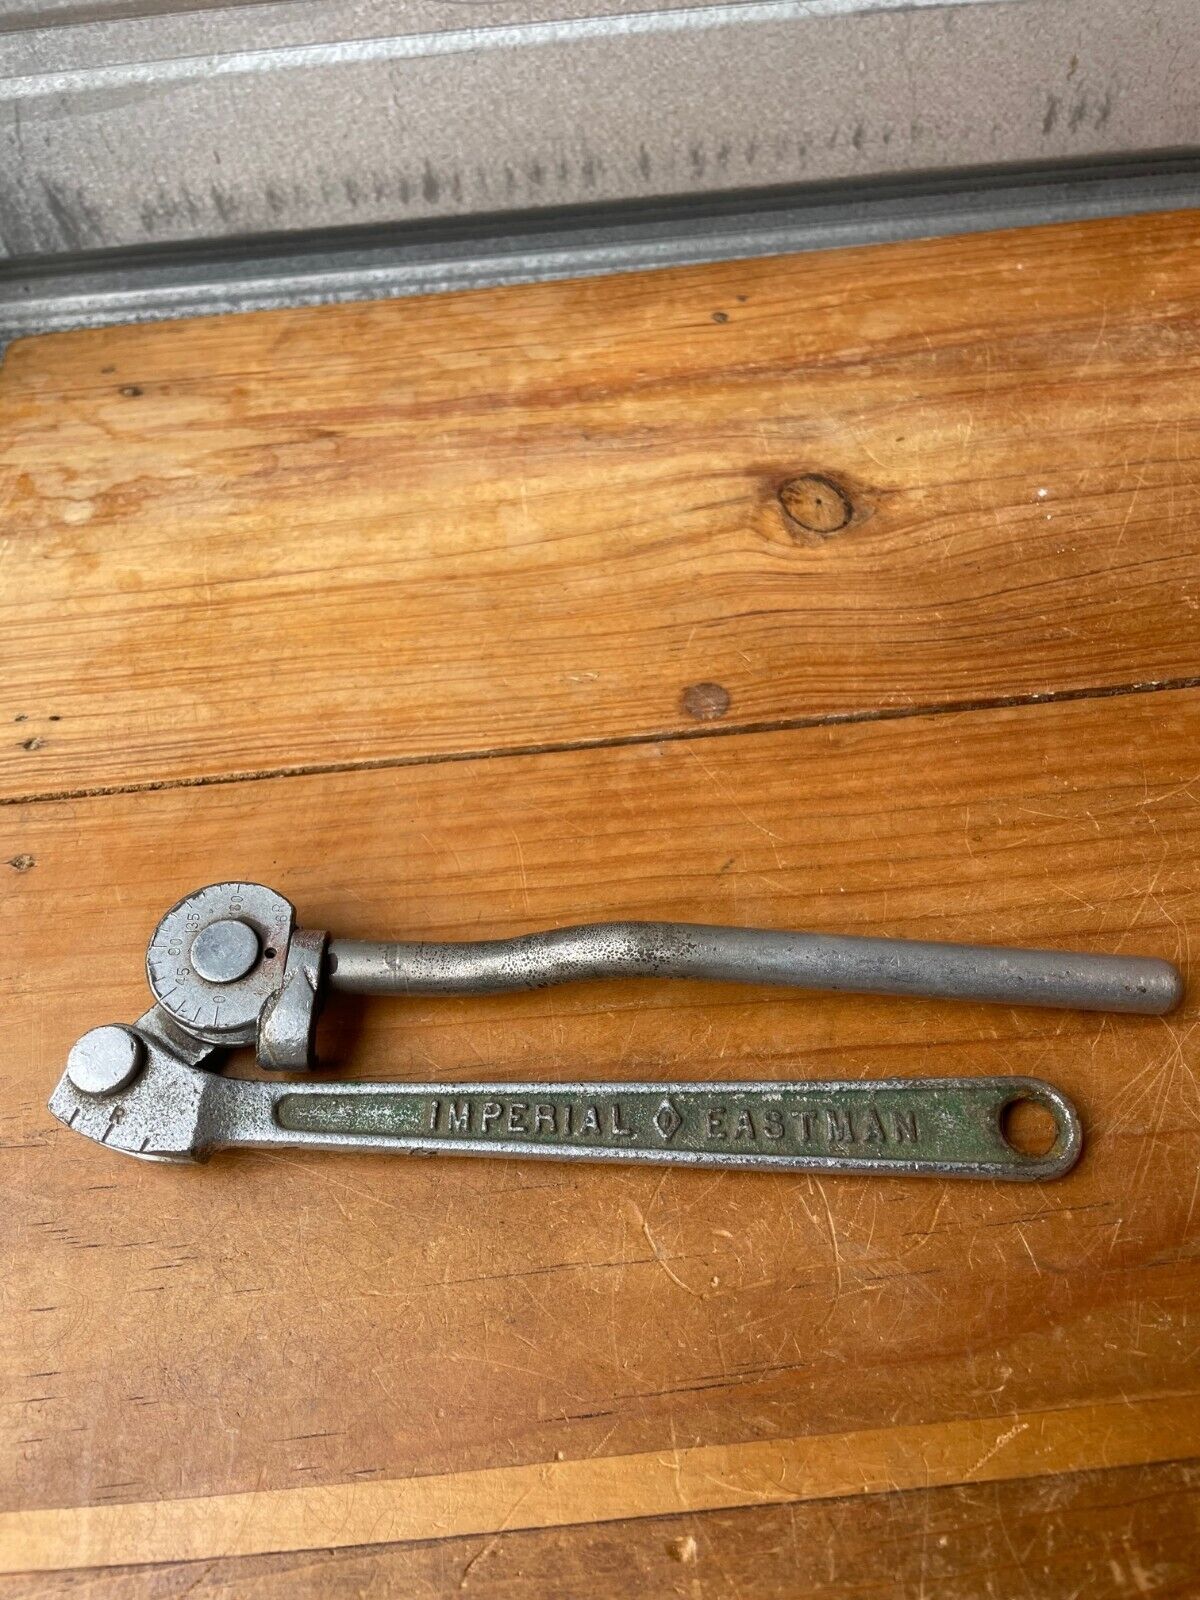 Vintage Imperial Eastman Tool #364-FH Tubing Bender 1/4 OD- 9/16 Radius